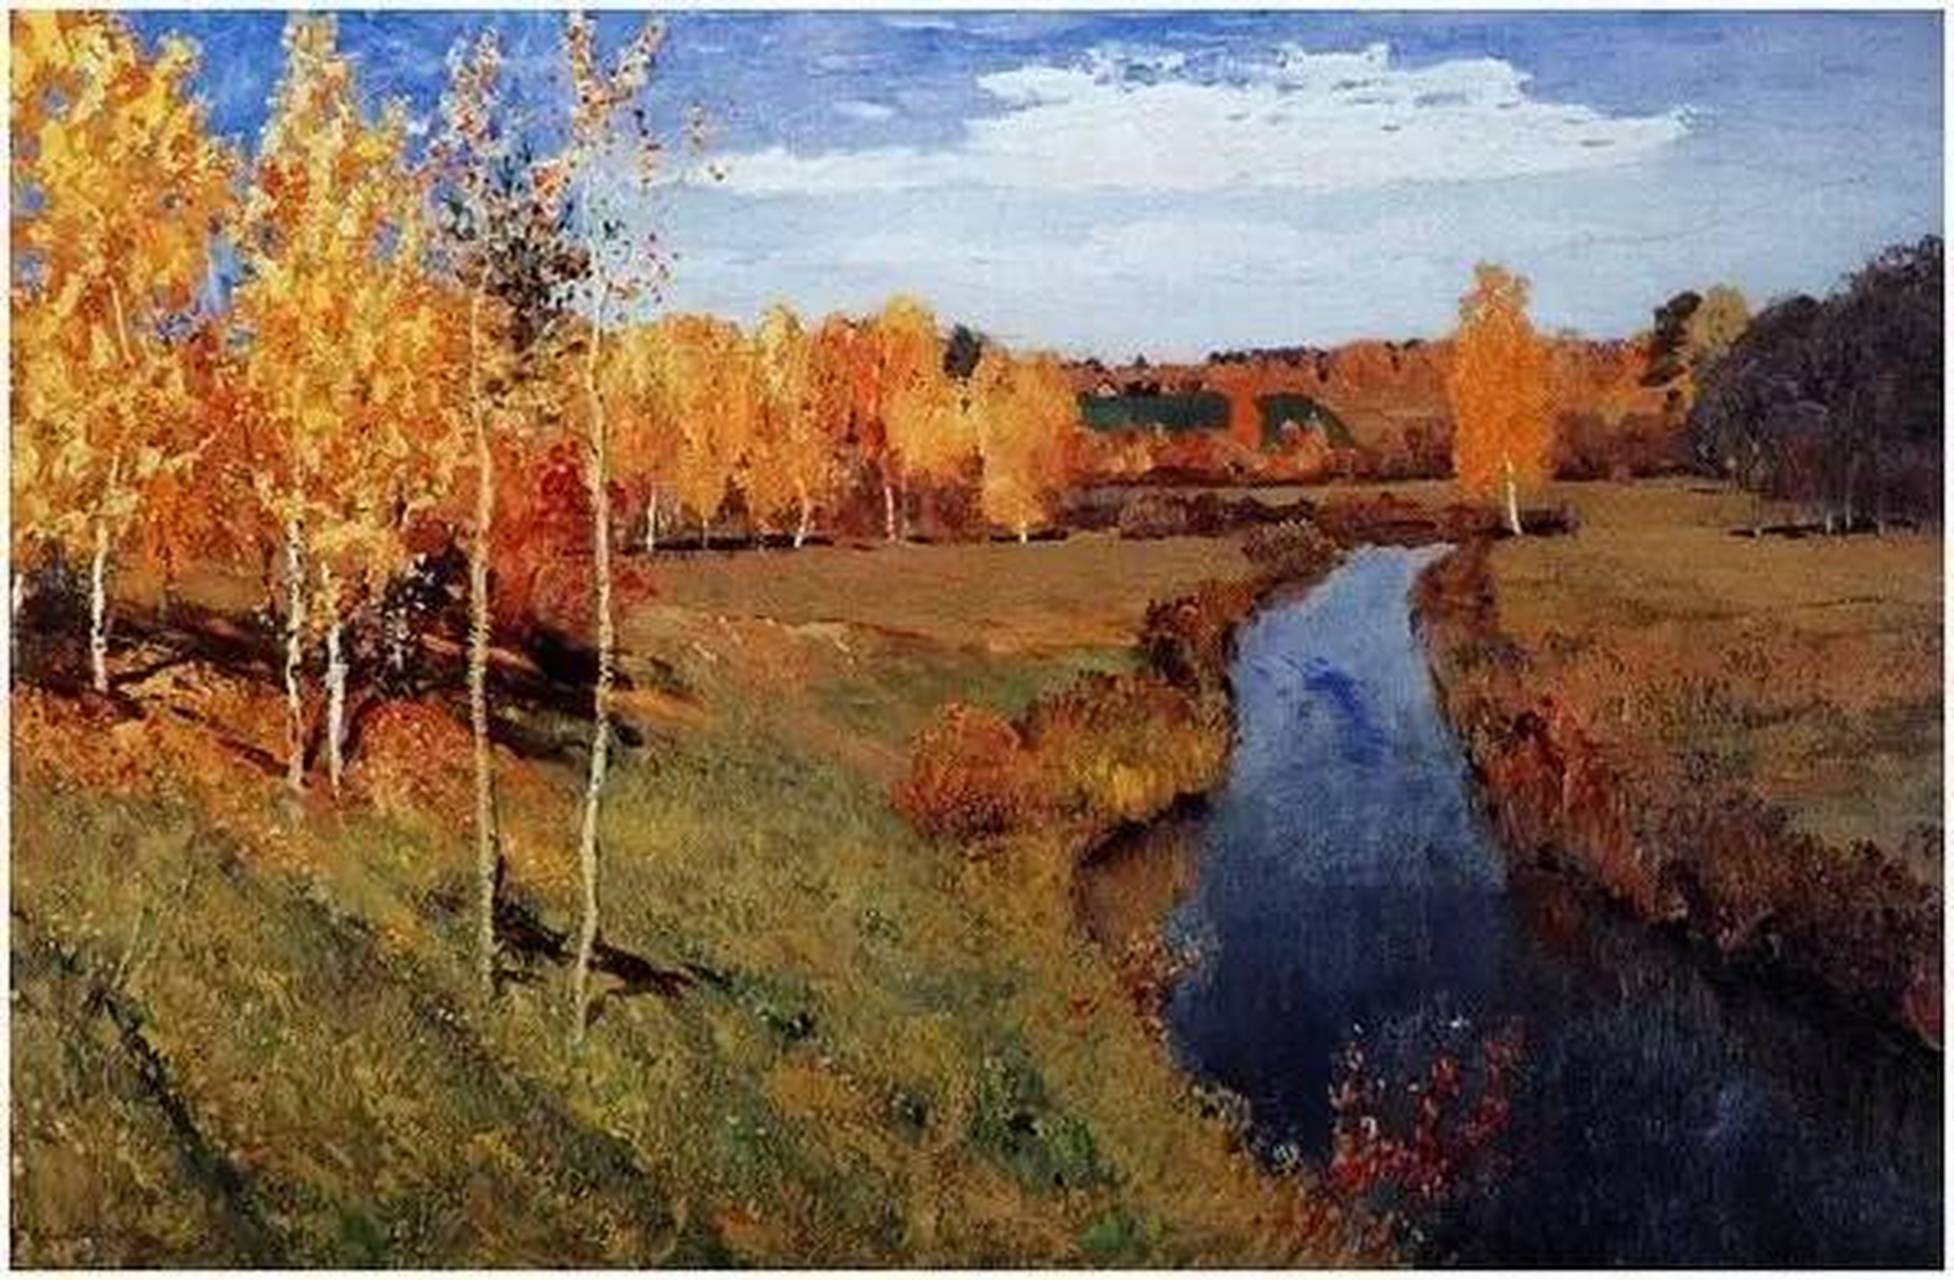 随手拍秋天# 《金色的秋天》是俄国风景画家列维坦创作的一幅极具